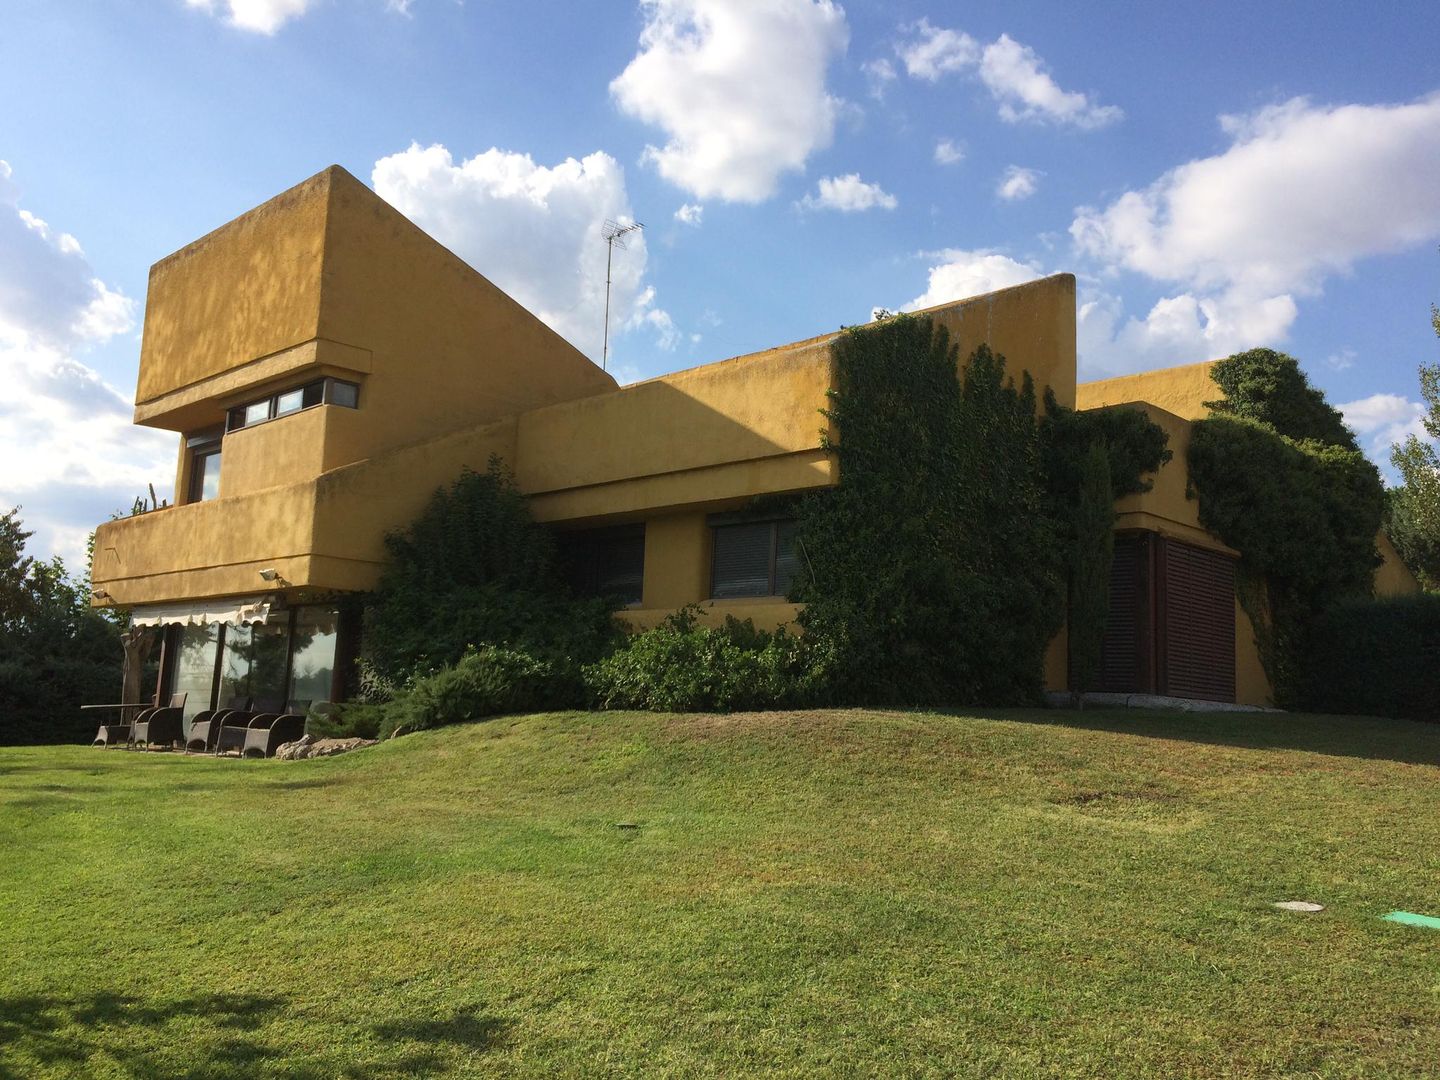 ARQUITECTURA | Casa Amarilla Ana Salomé Branco Casas unifamilares Ladrillos arquitectura,arquitecturadeinteriores,reforma,casaunifamilar,propuestassostenibles